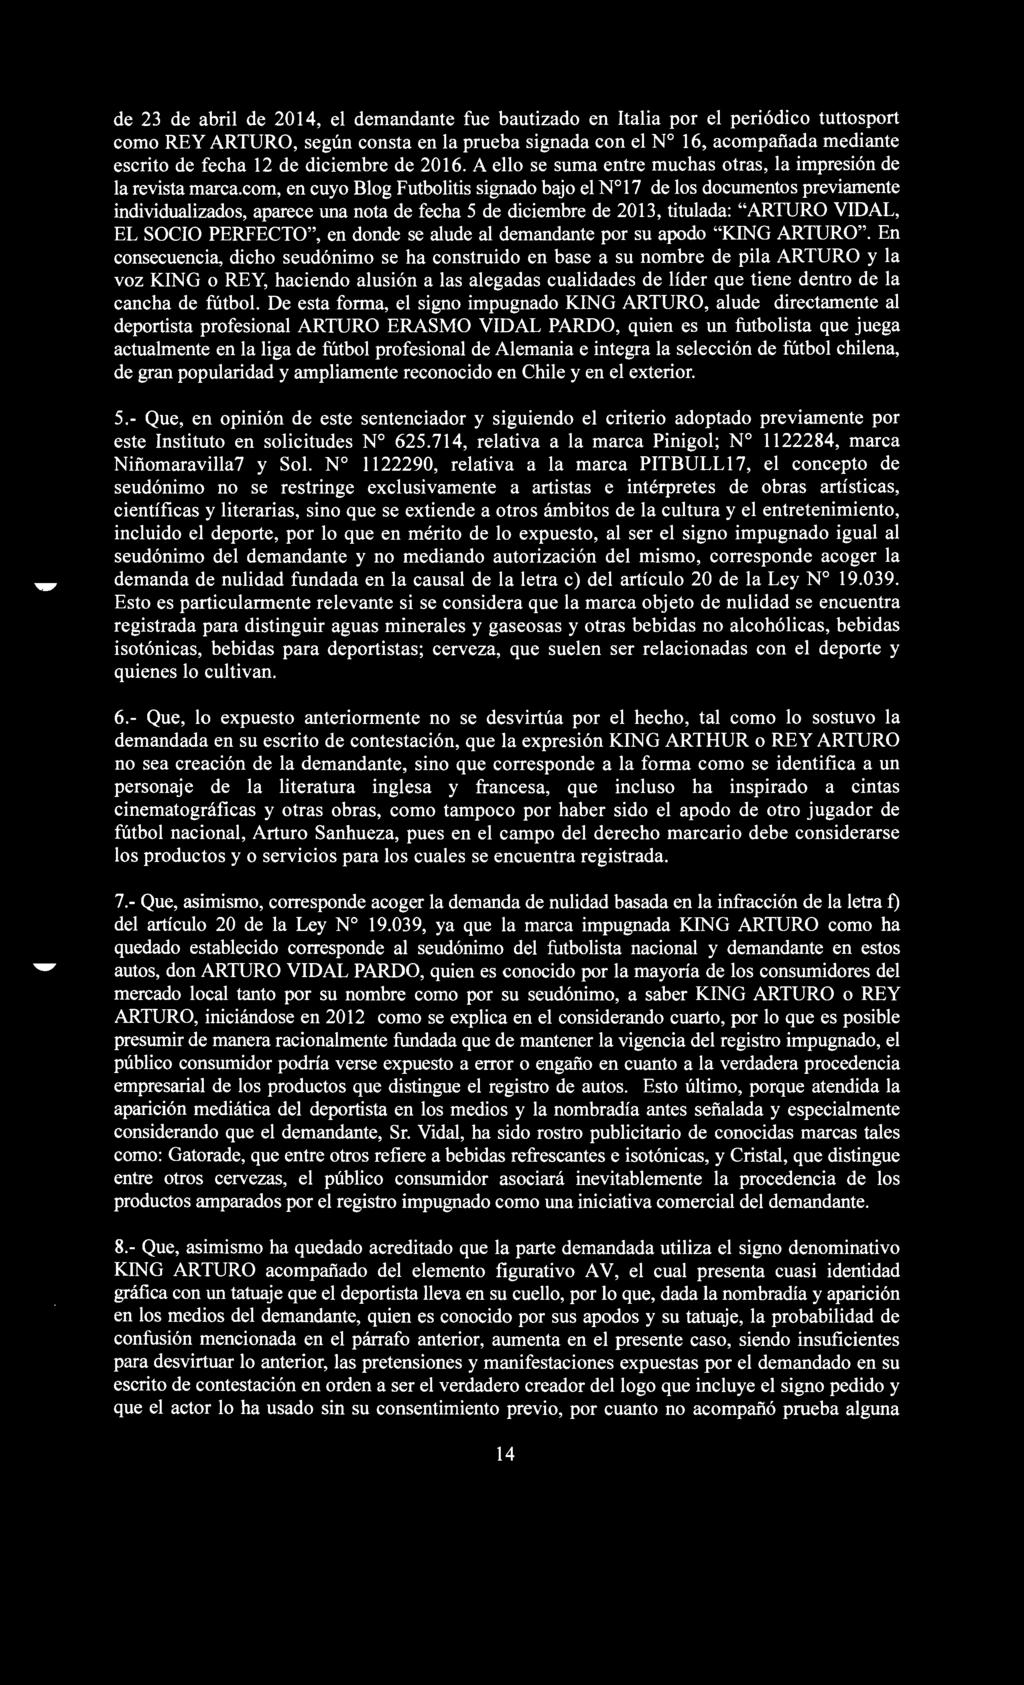 corn, en cuyo Blog Futbolitis signado bajo el N 17 de los documentos previamente individualizados, aparece una nota de fecha 5 de diciembre de 2013, titulada: "ARTURO VIDAL, EL SOCIO PERFECTO", en